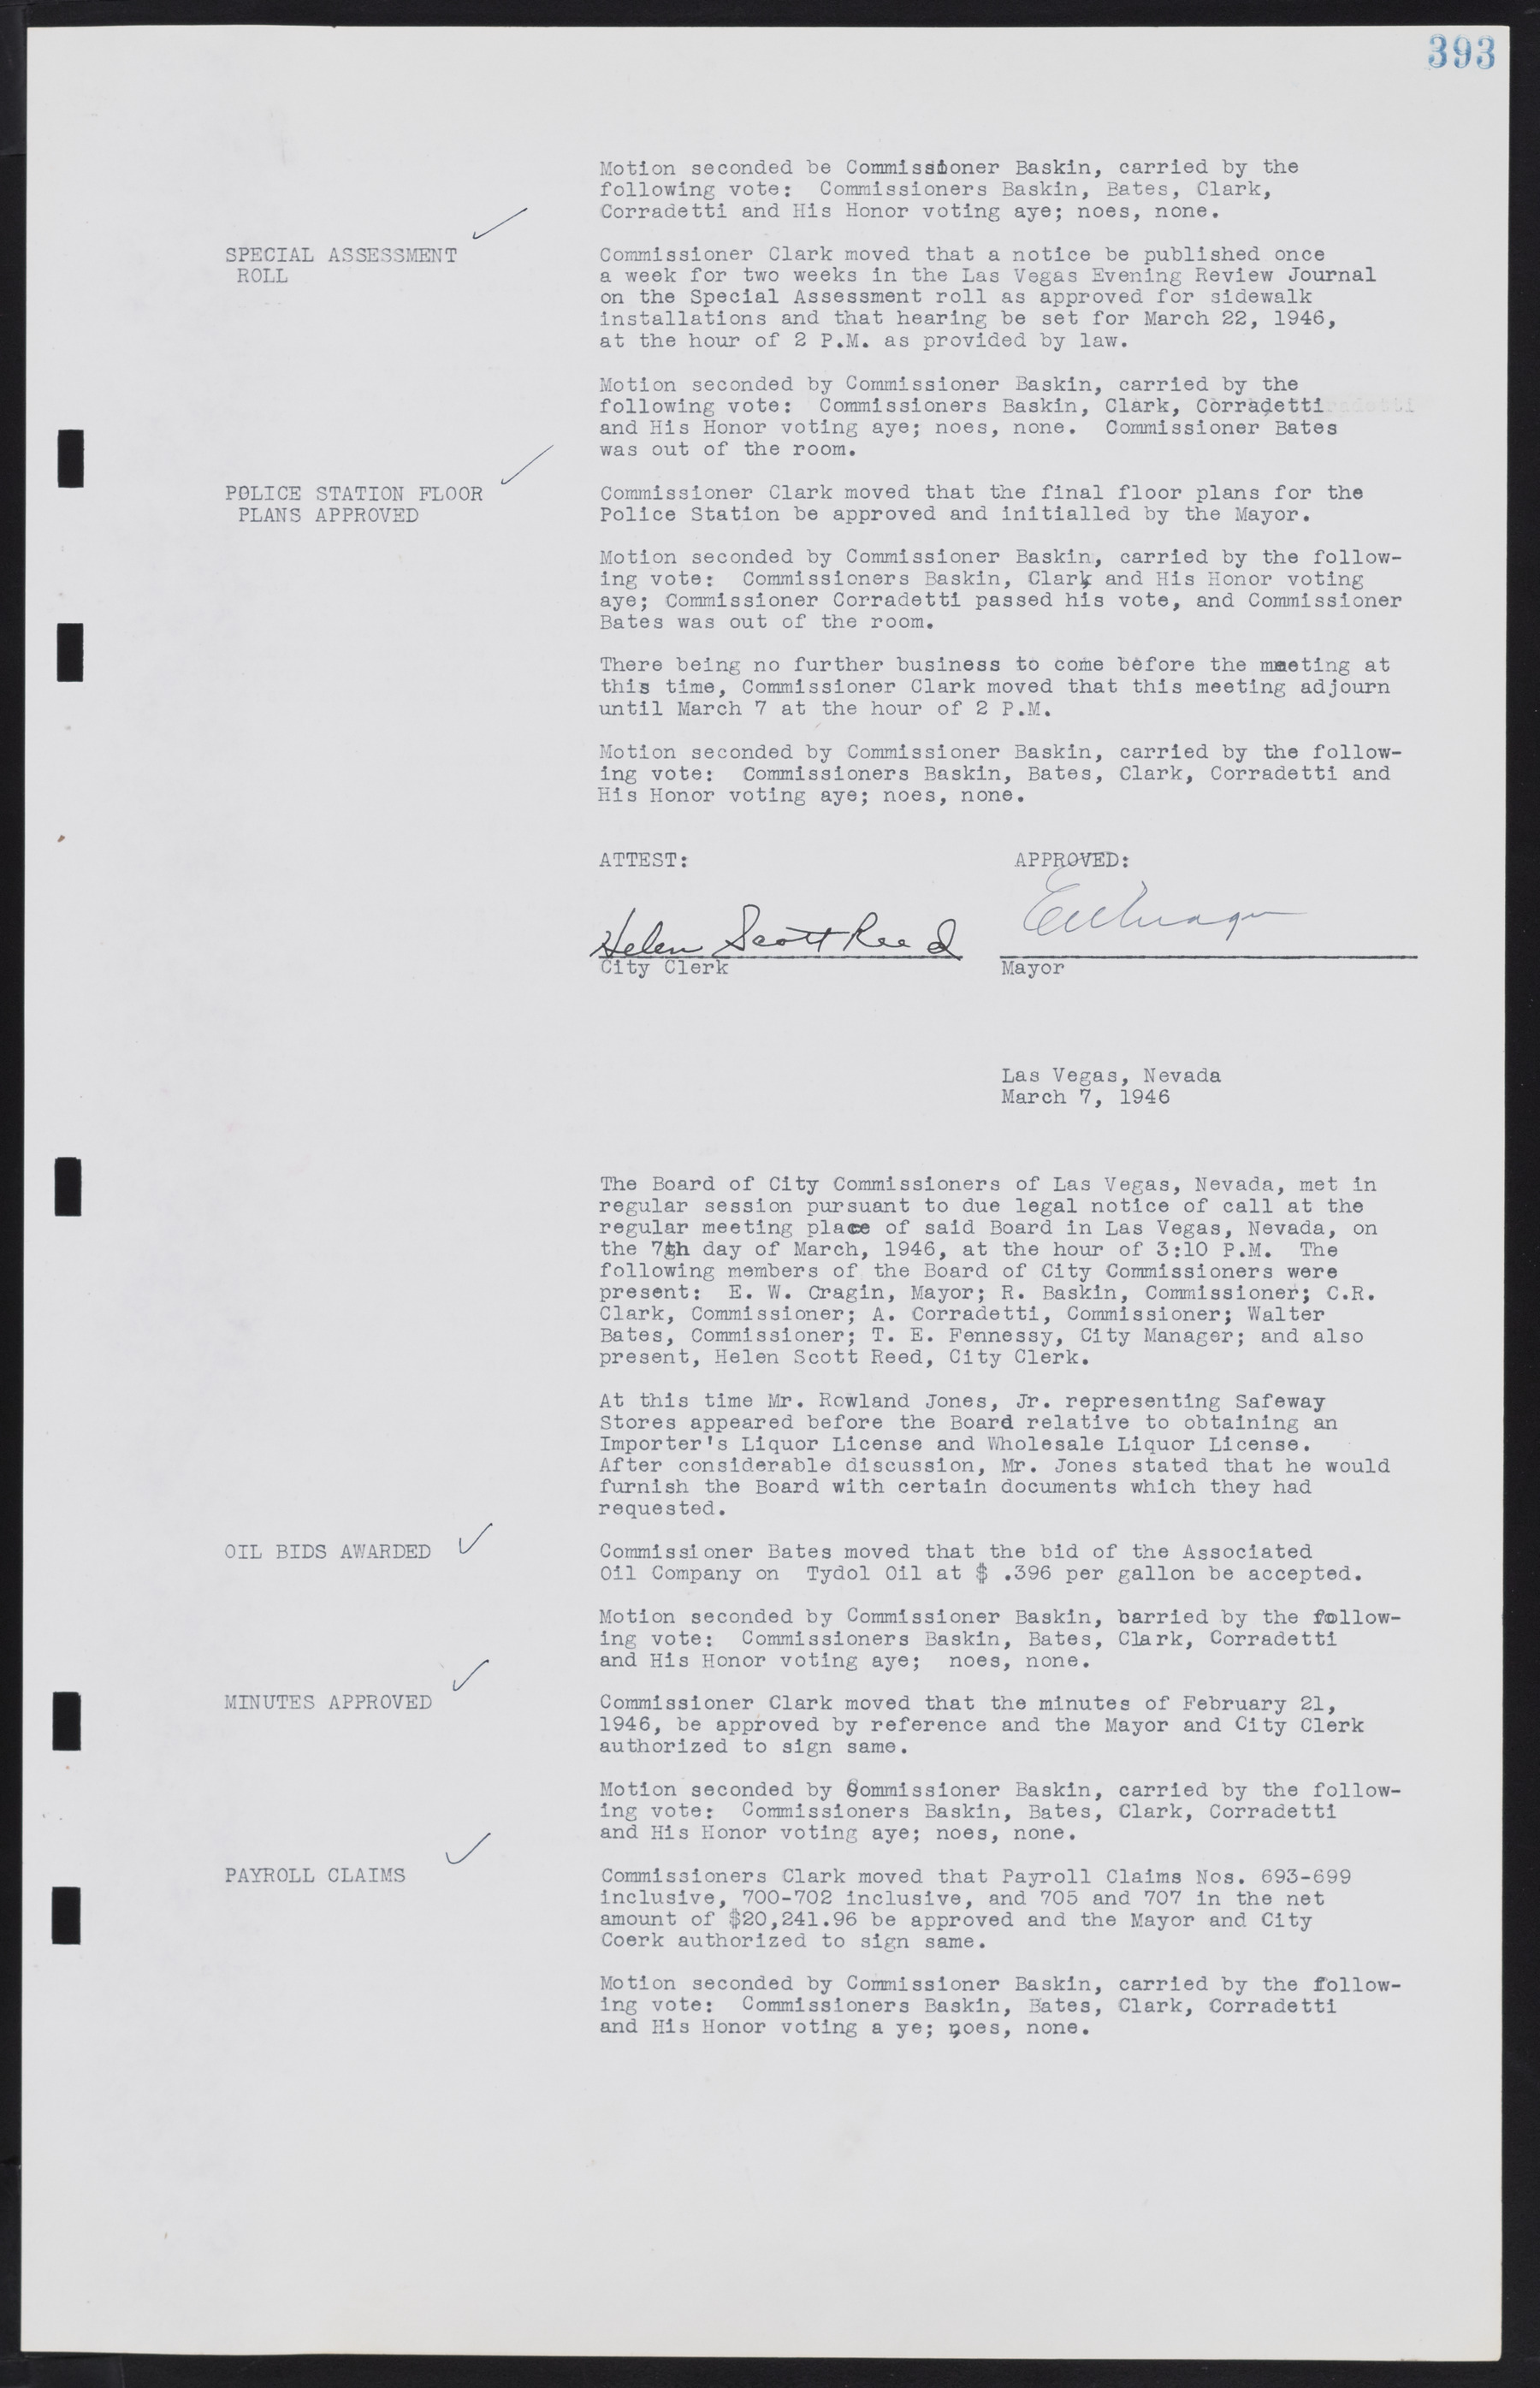 Las Vegas City Commission Minutes, August 11, 1942 to December 30, 1946, lvc000005-420